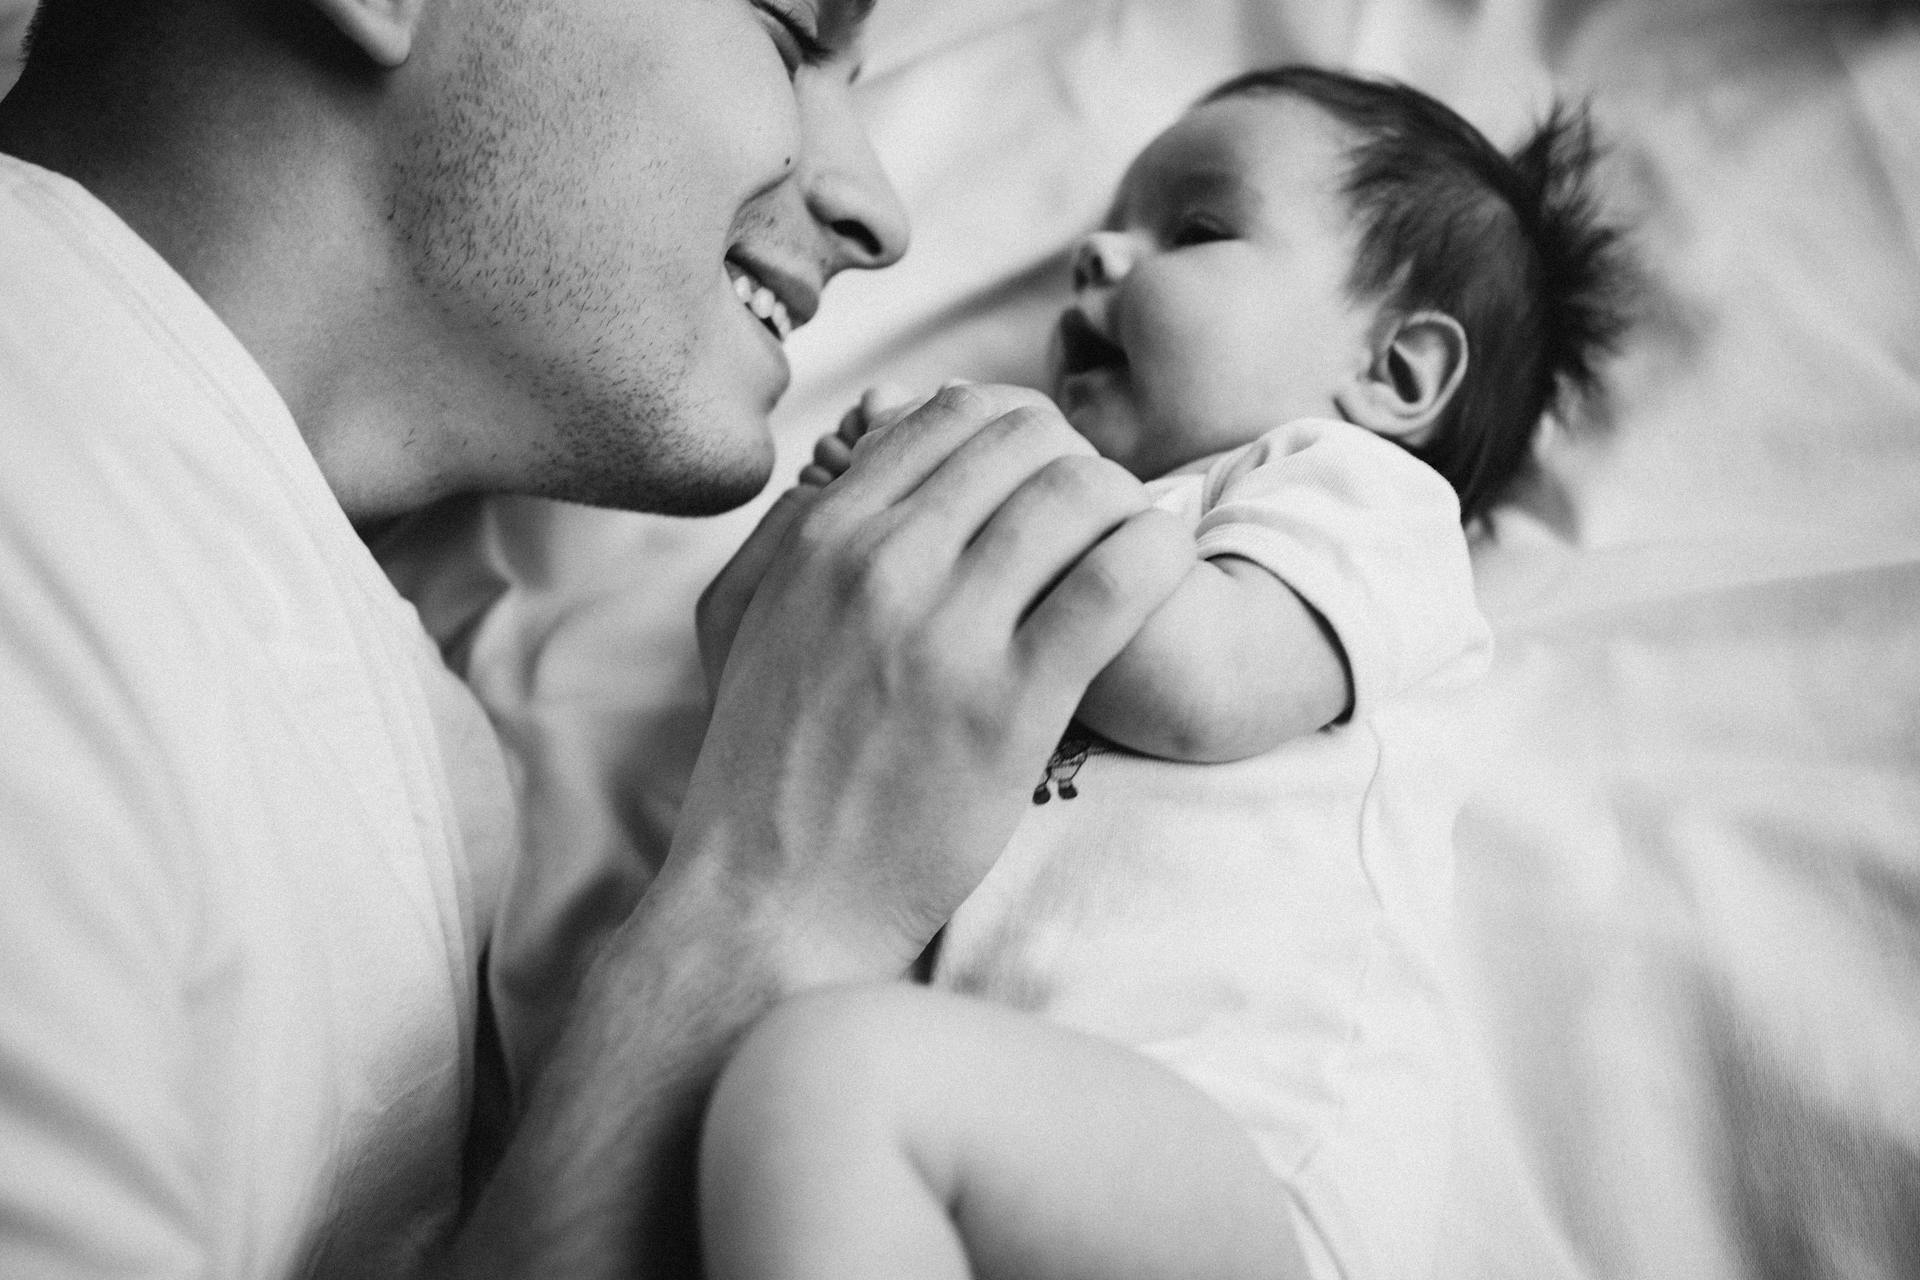 Un père allongé sur son lit avec son nouveau-né | Source : Pexels